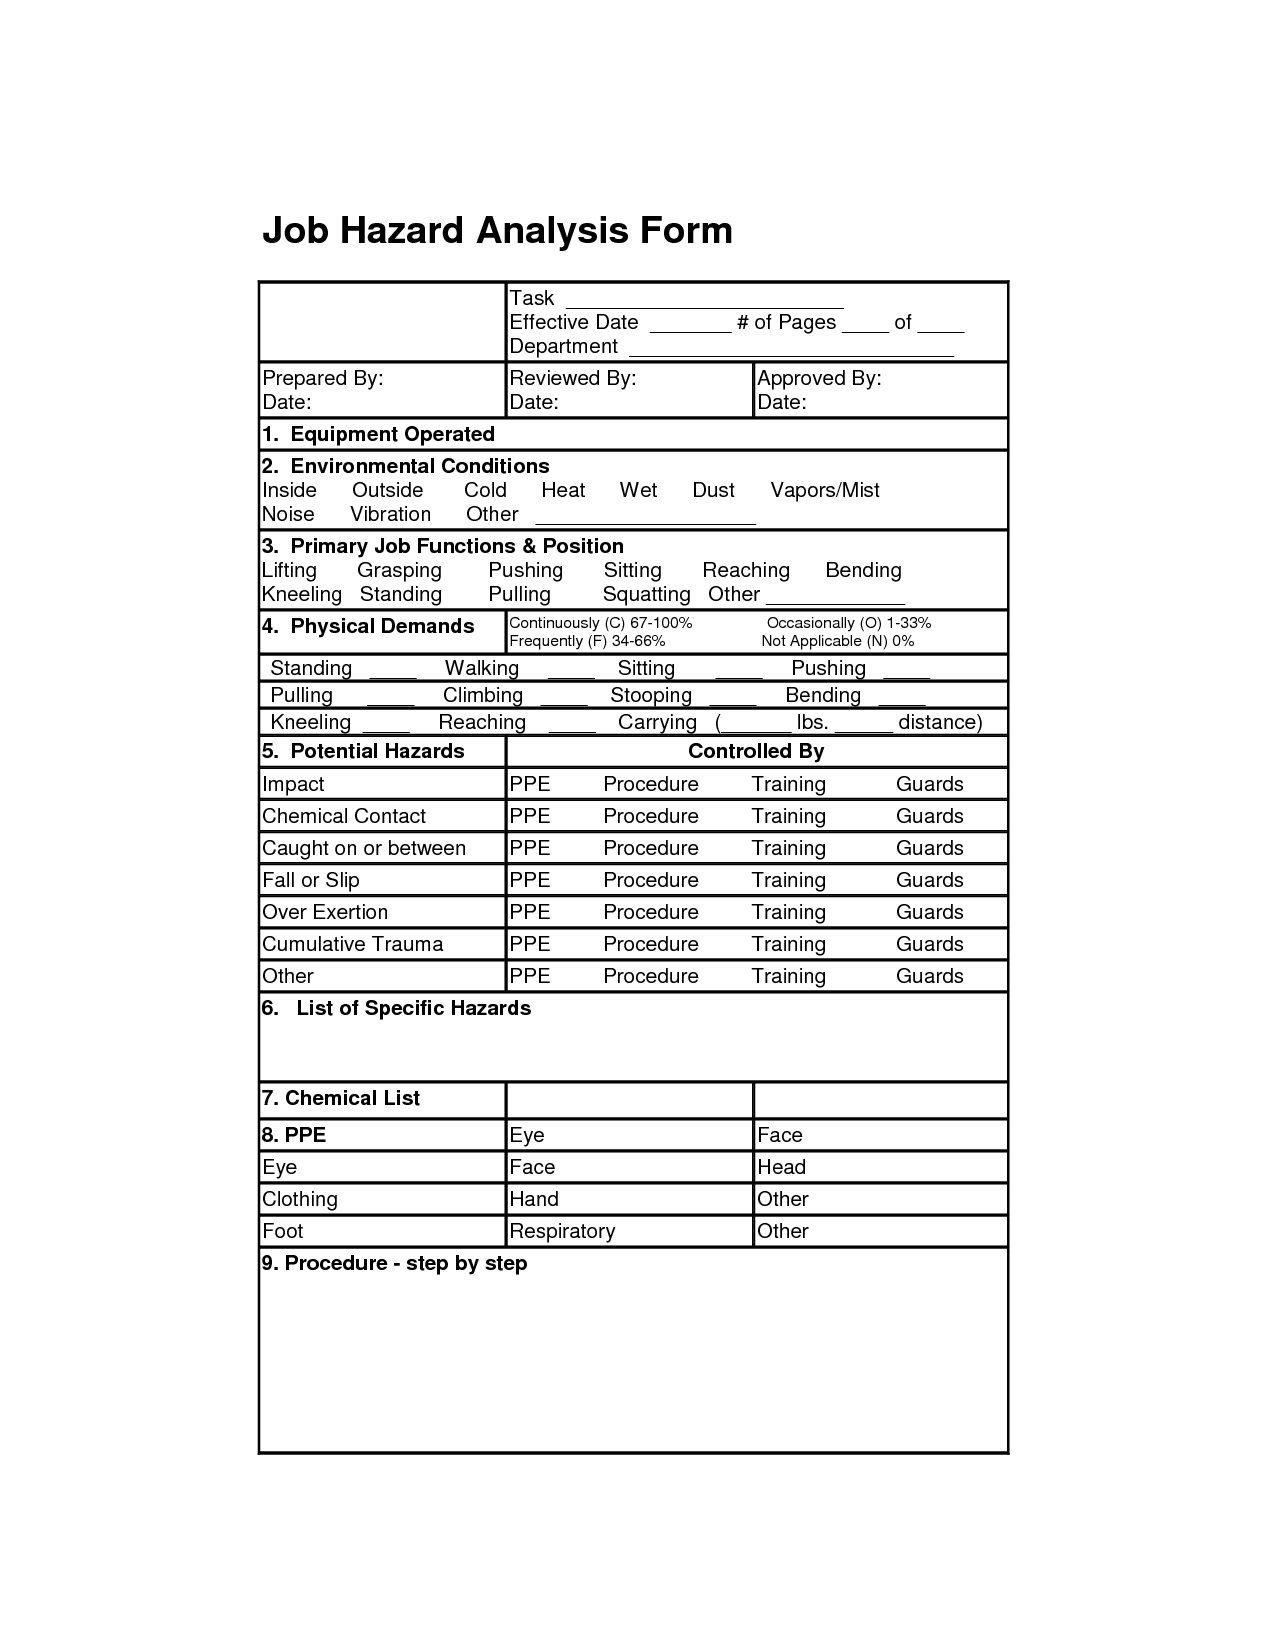 Job Hazard Analysis Form | Job Analysis Forms | Job Analysis For Safety Analysis Report Template